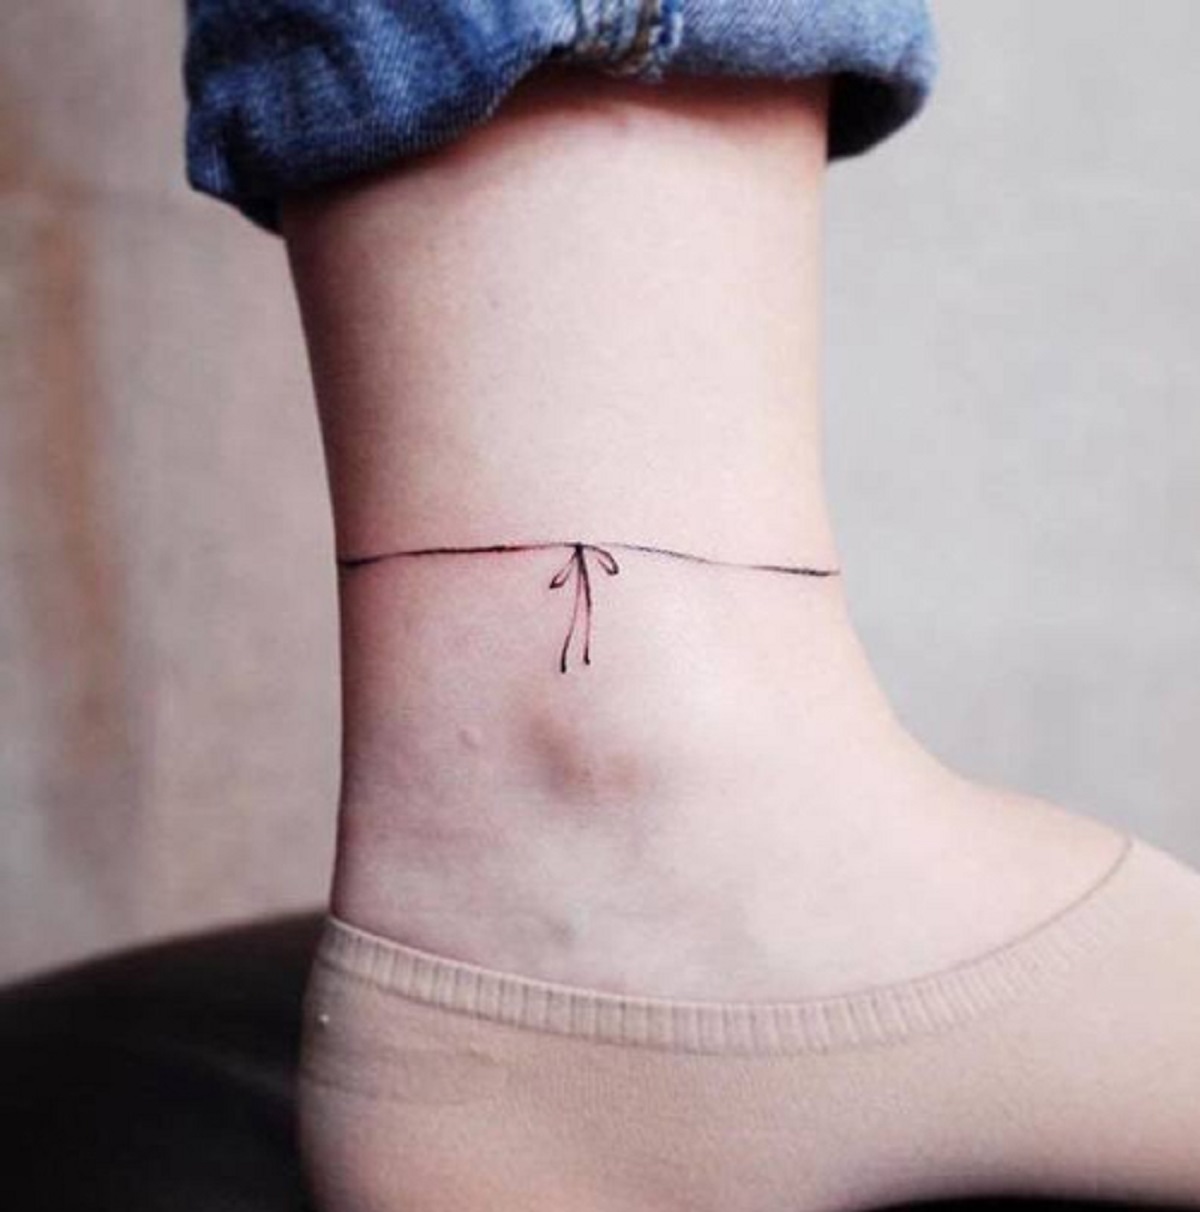 Mẫu hình xăm vòng nơ ở cổ chân đơn giản, tinh tế